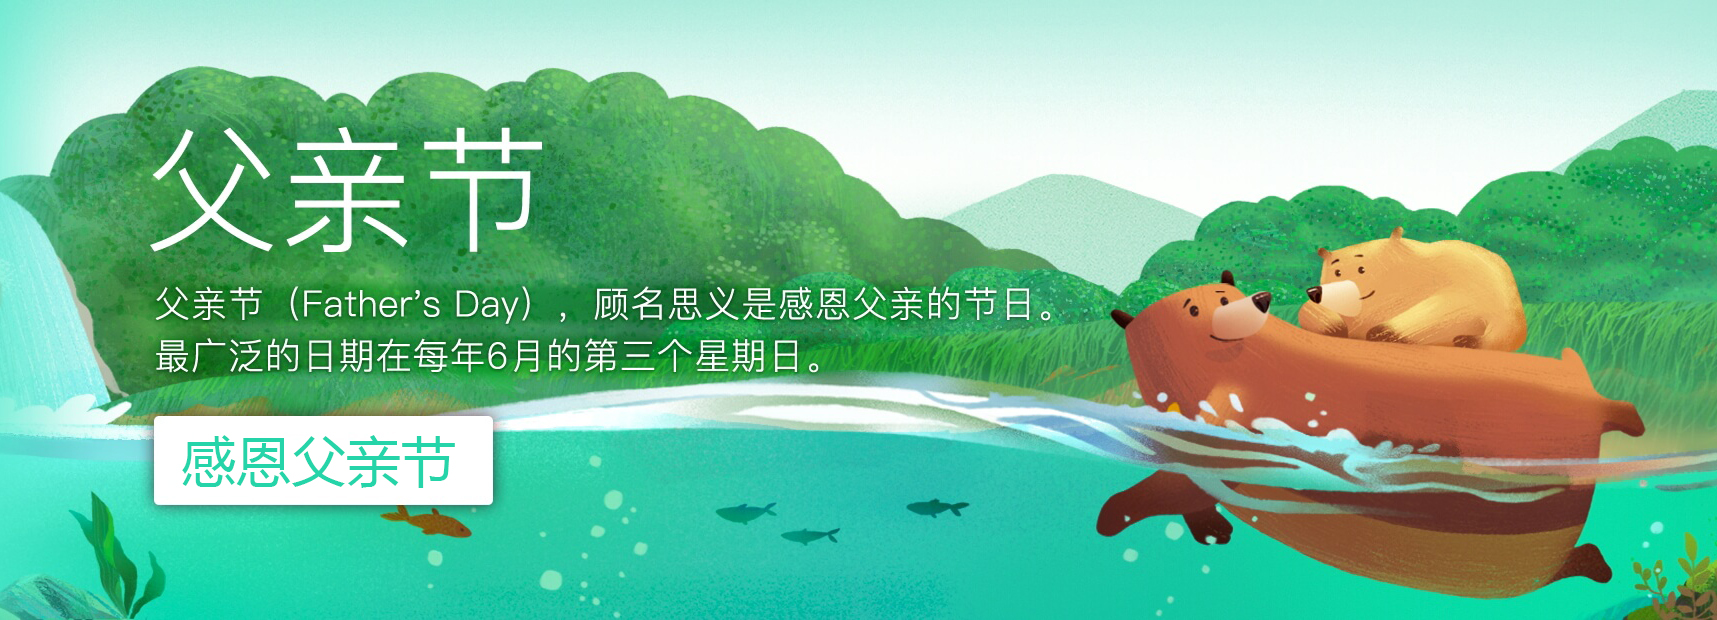 广州珠江电缆有限公司祝天下所有父亲： 快乐幸福，平安如意！